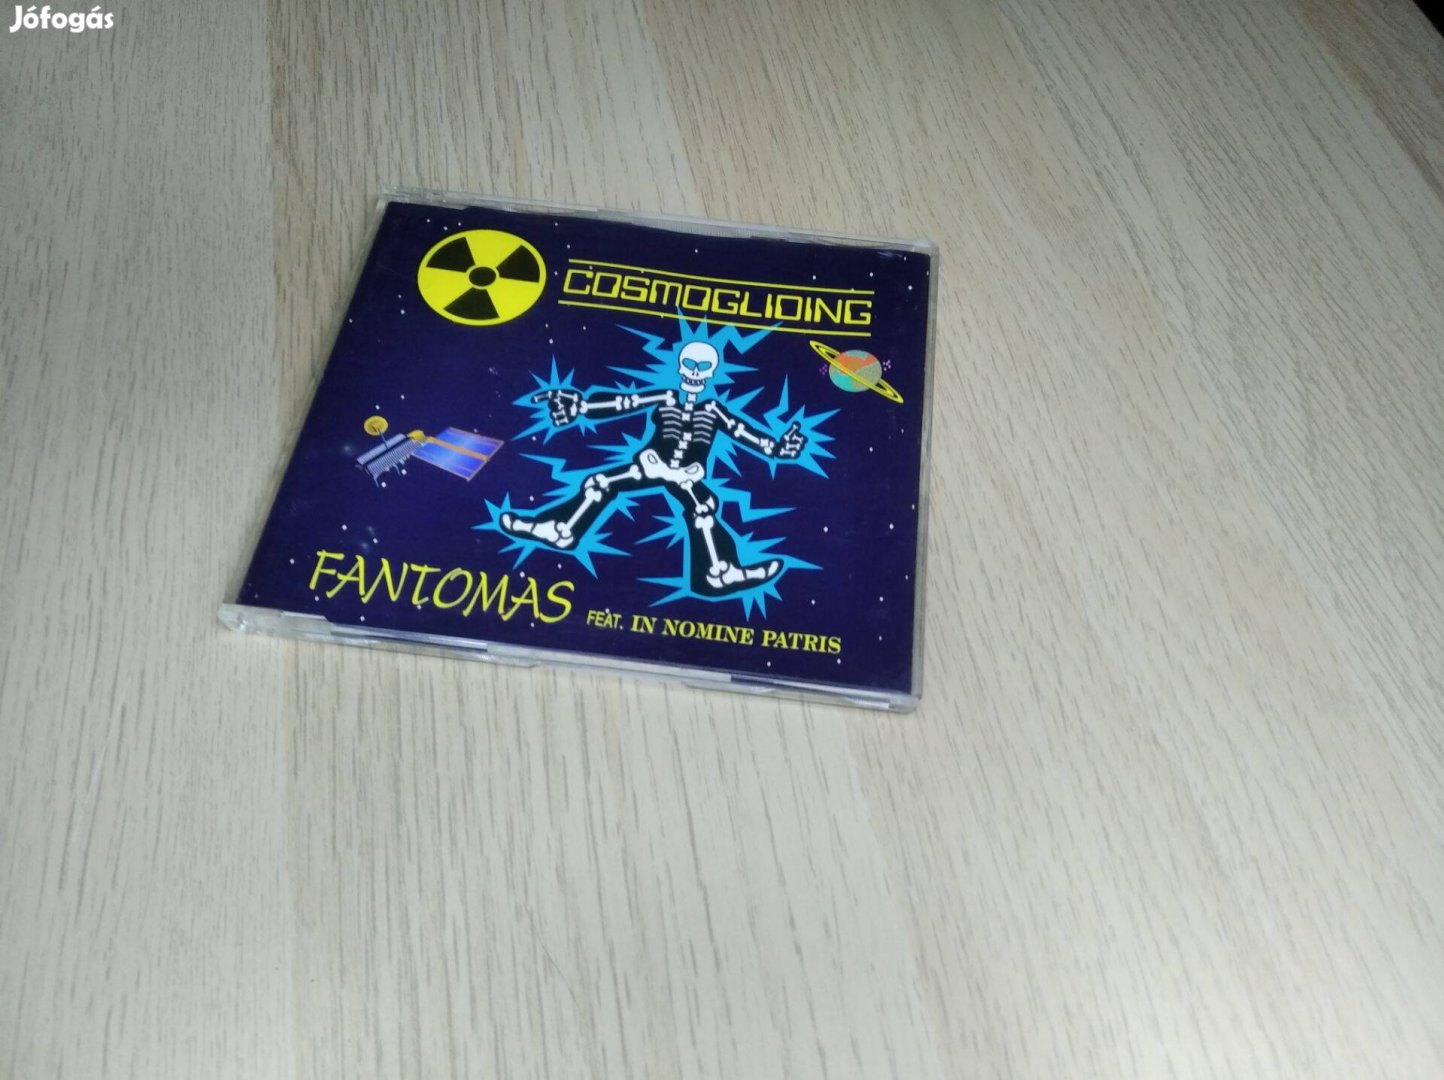 Fantomas Feat. In Nomine Patris - Cosmogliding / Maxi CD 1996